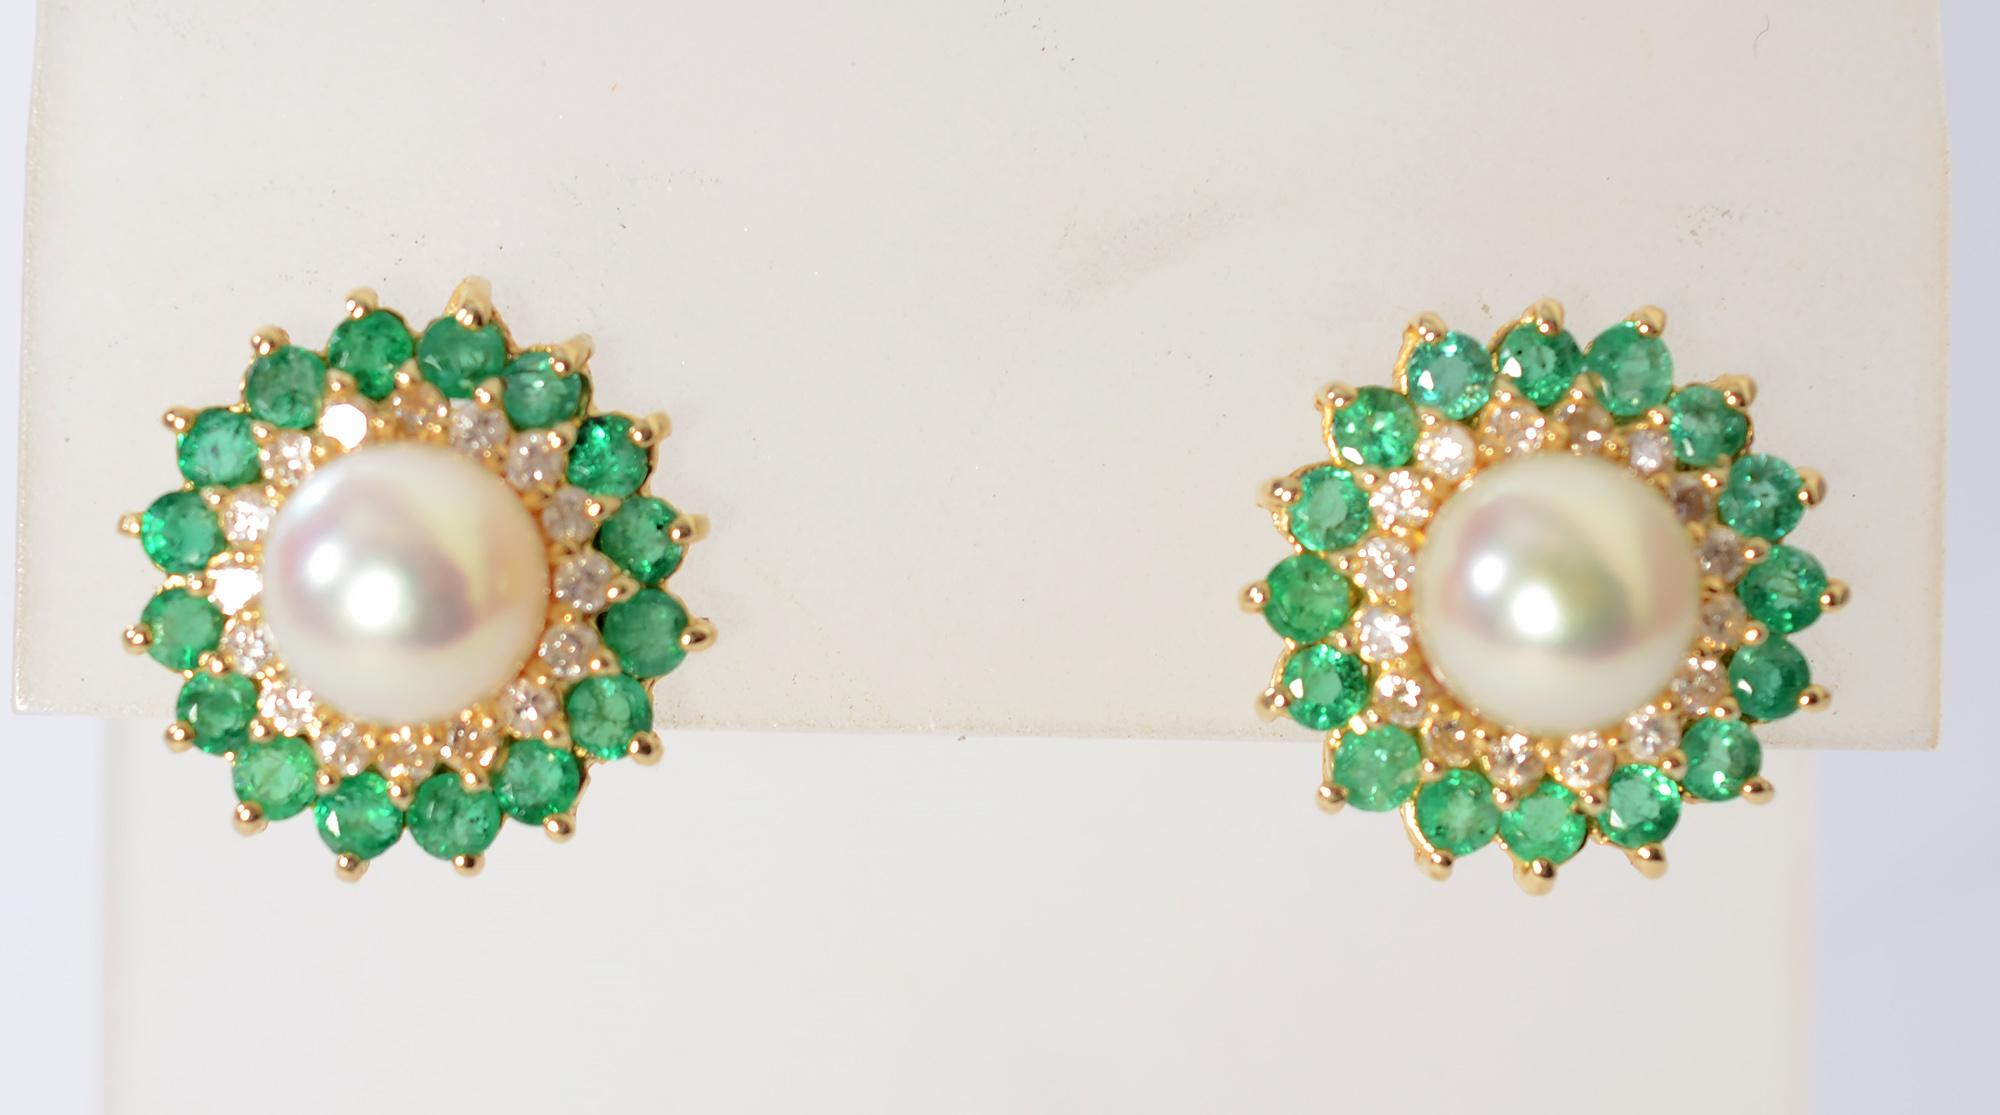 Zarte, aber wirkungsvolle Perlenohrringe, umgeben von Diamanten und Smaragden im Rundschliff. Die Ohrringe wurden wahrscheinlich in den 1960er Jahren hergestellt, aber das Design ist zeitlos. Die zentralen Perlen sind 7,25 mm groß. Das Gesamtgewicht